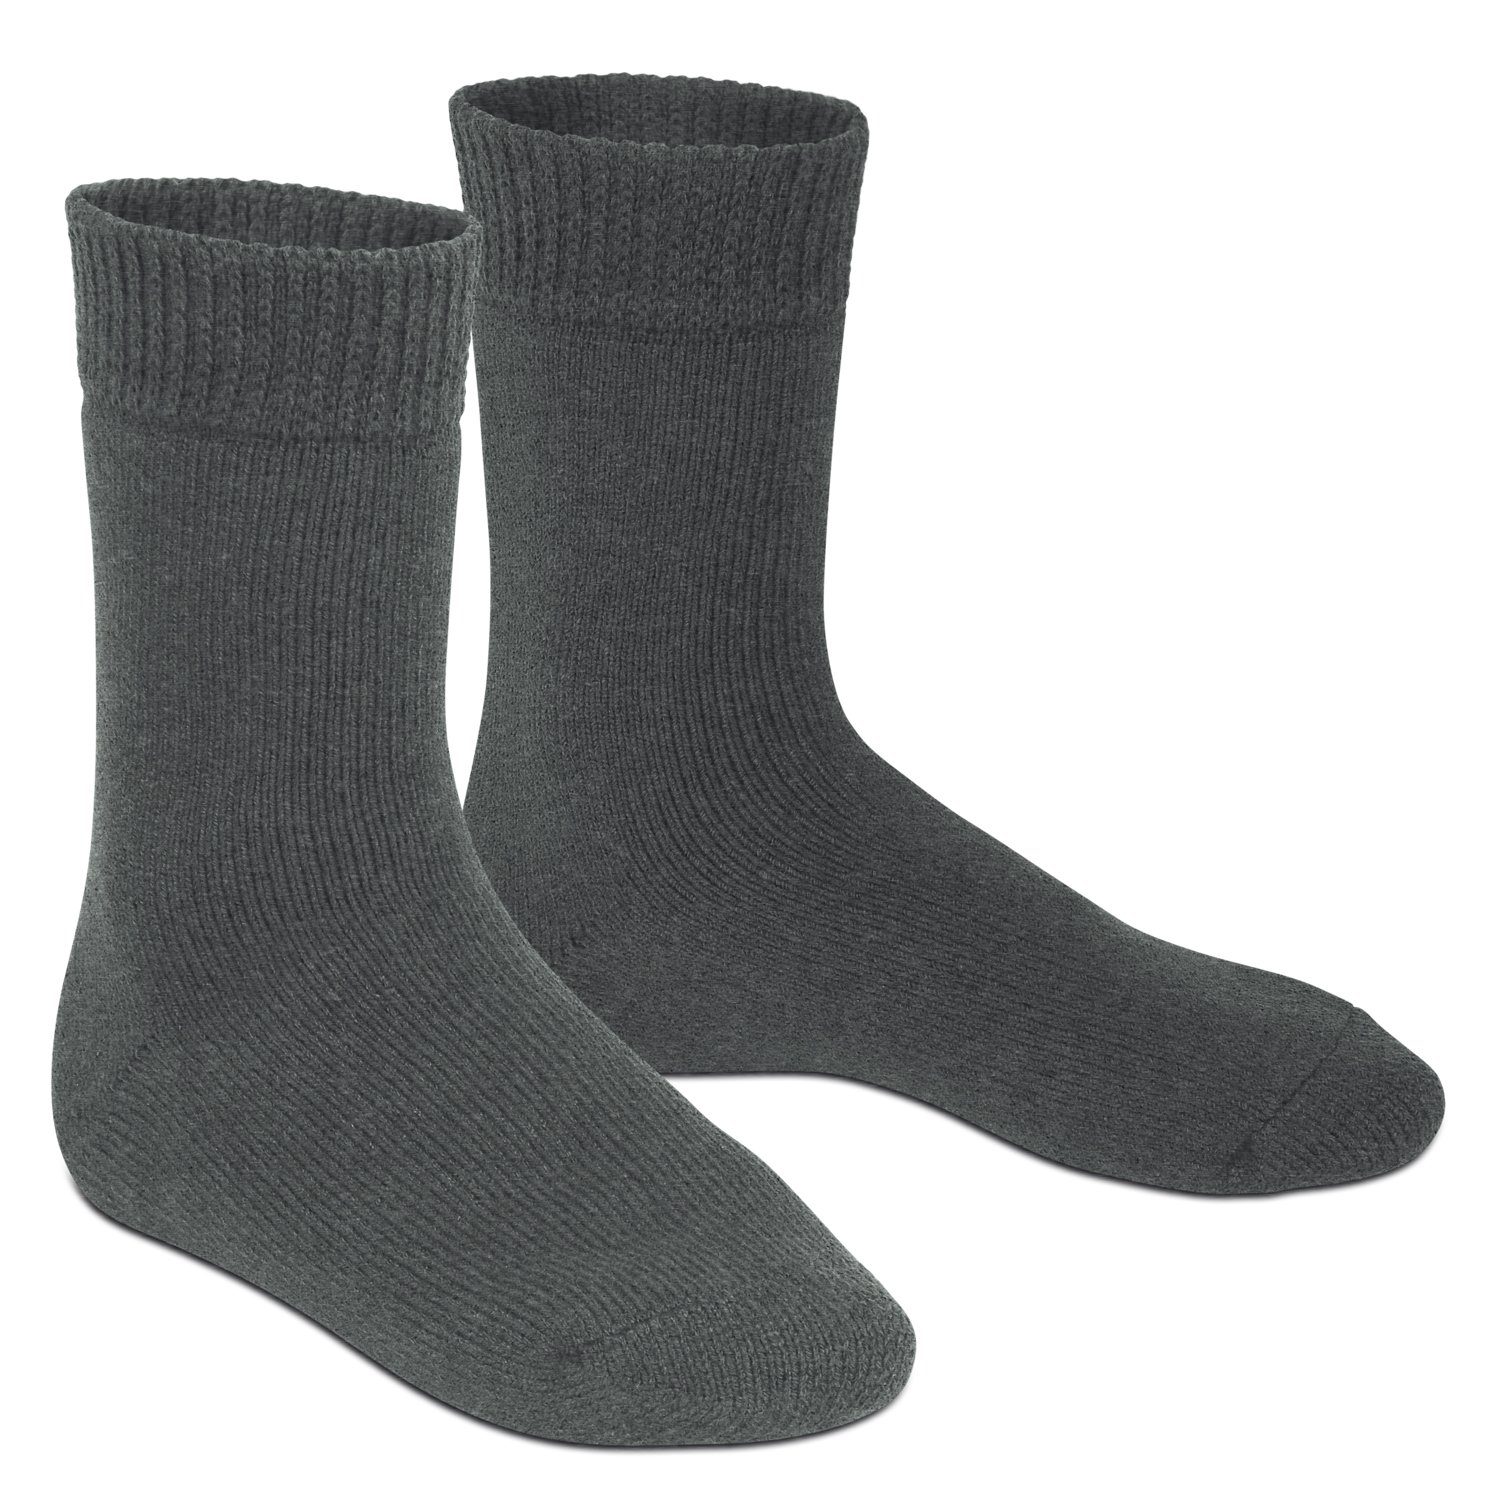 (1 Thermo warm Footstar Paar) Damen & Anthrazit Herren Socken extra Thermosocken